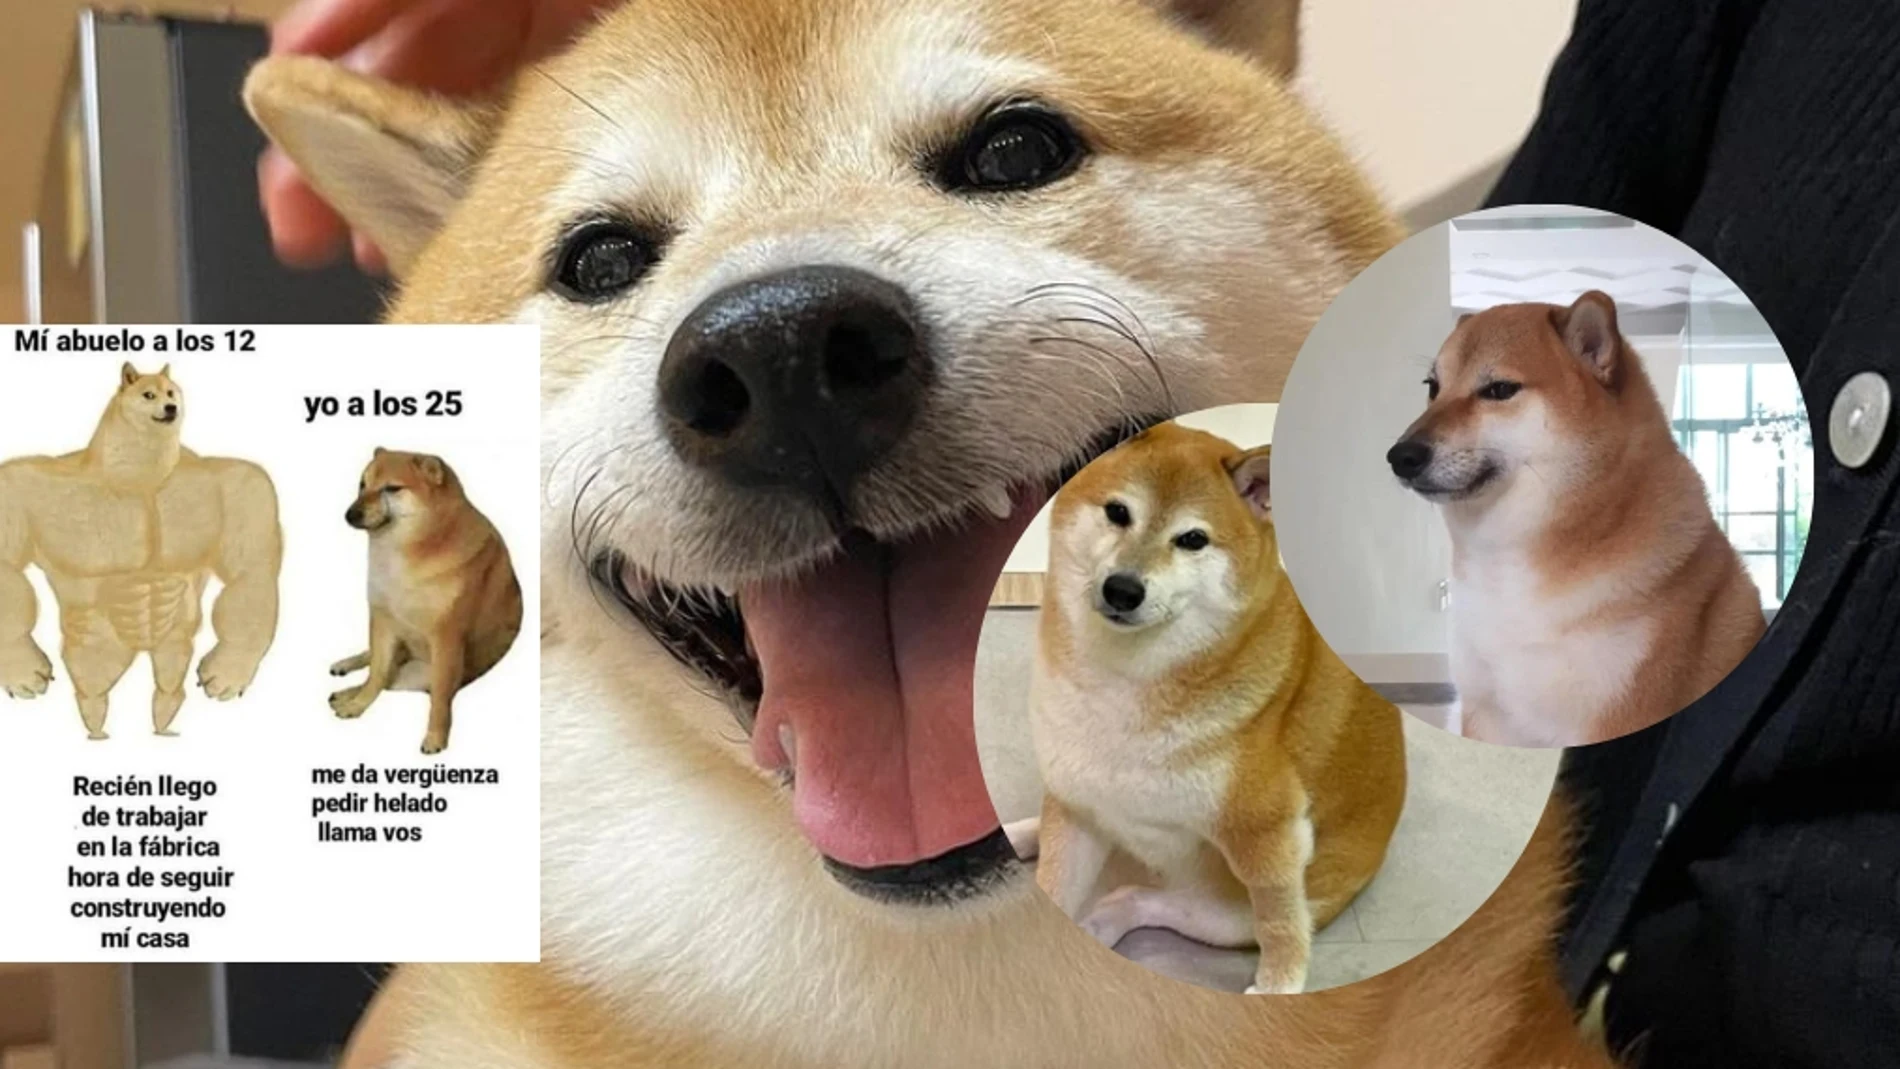 Las redes de luto: Muere 'Cheems', el perrito de los memes más famoso de internet 